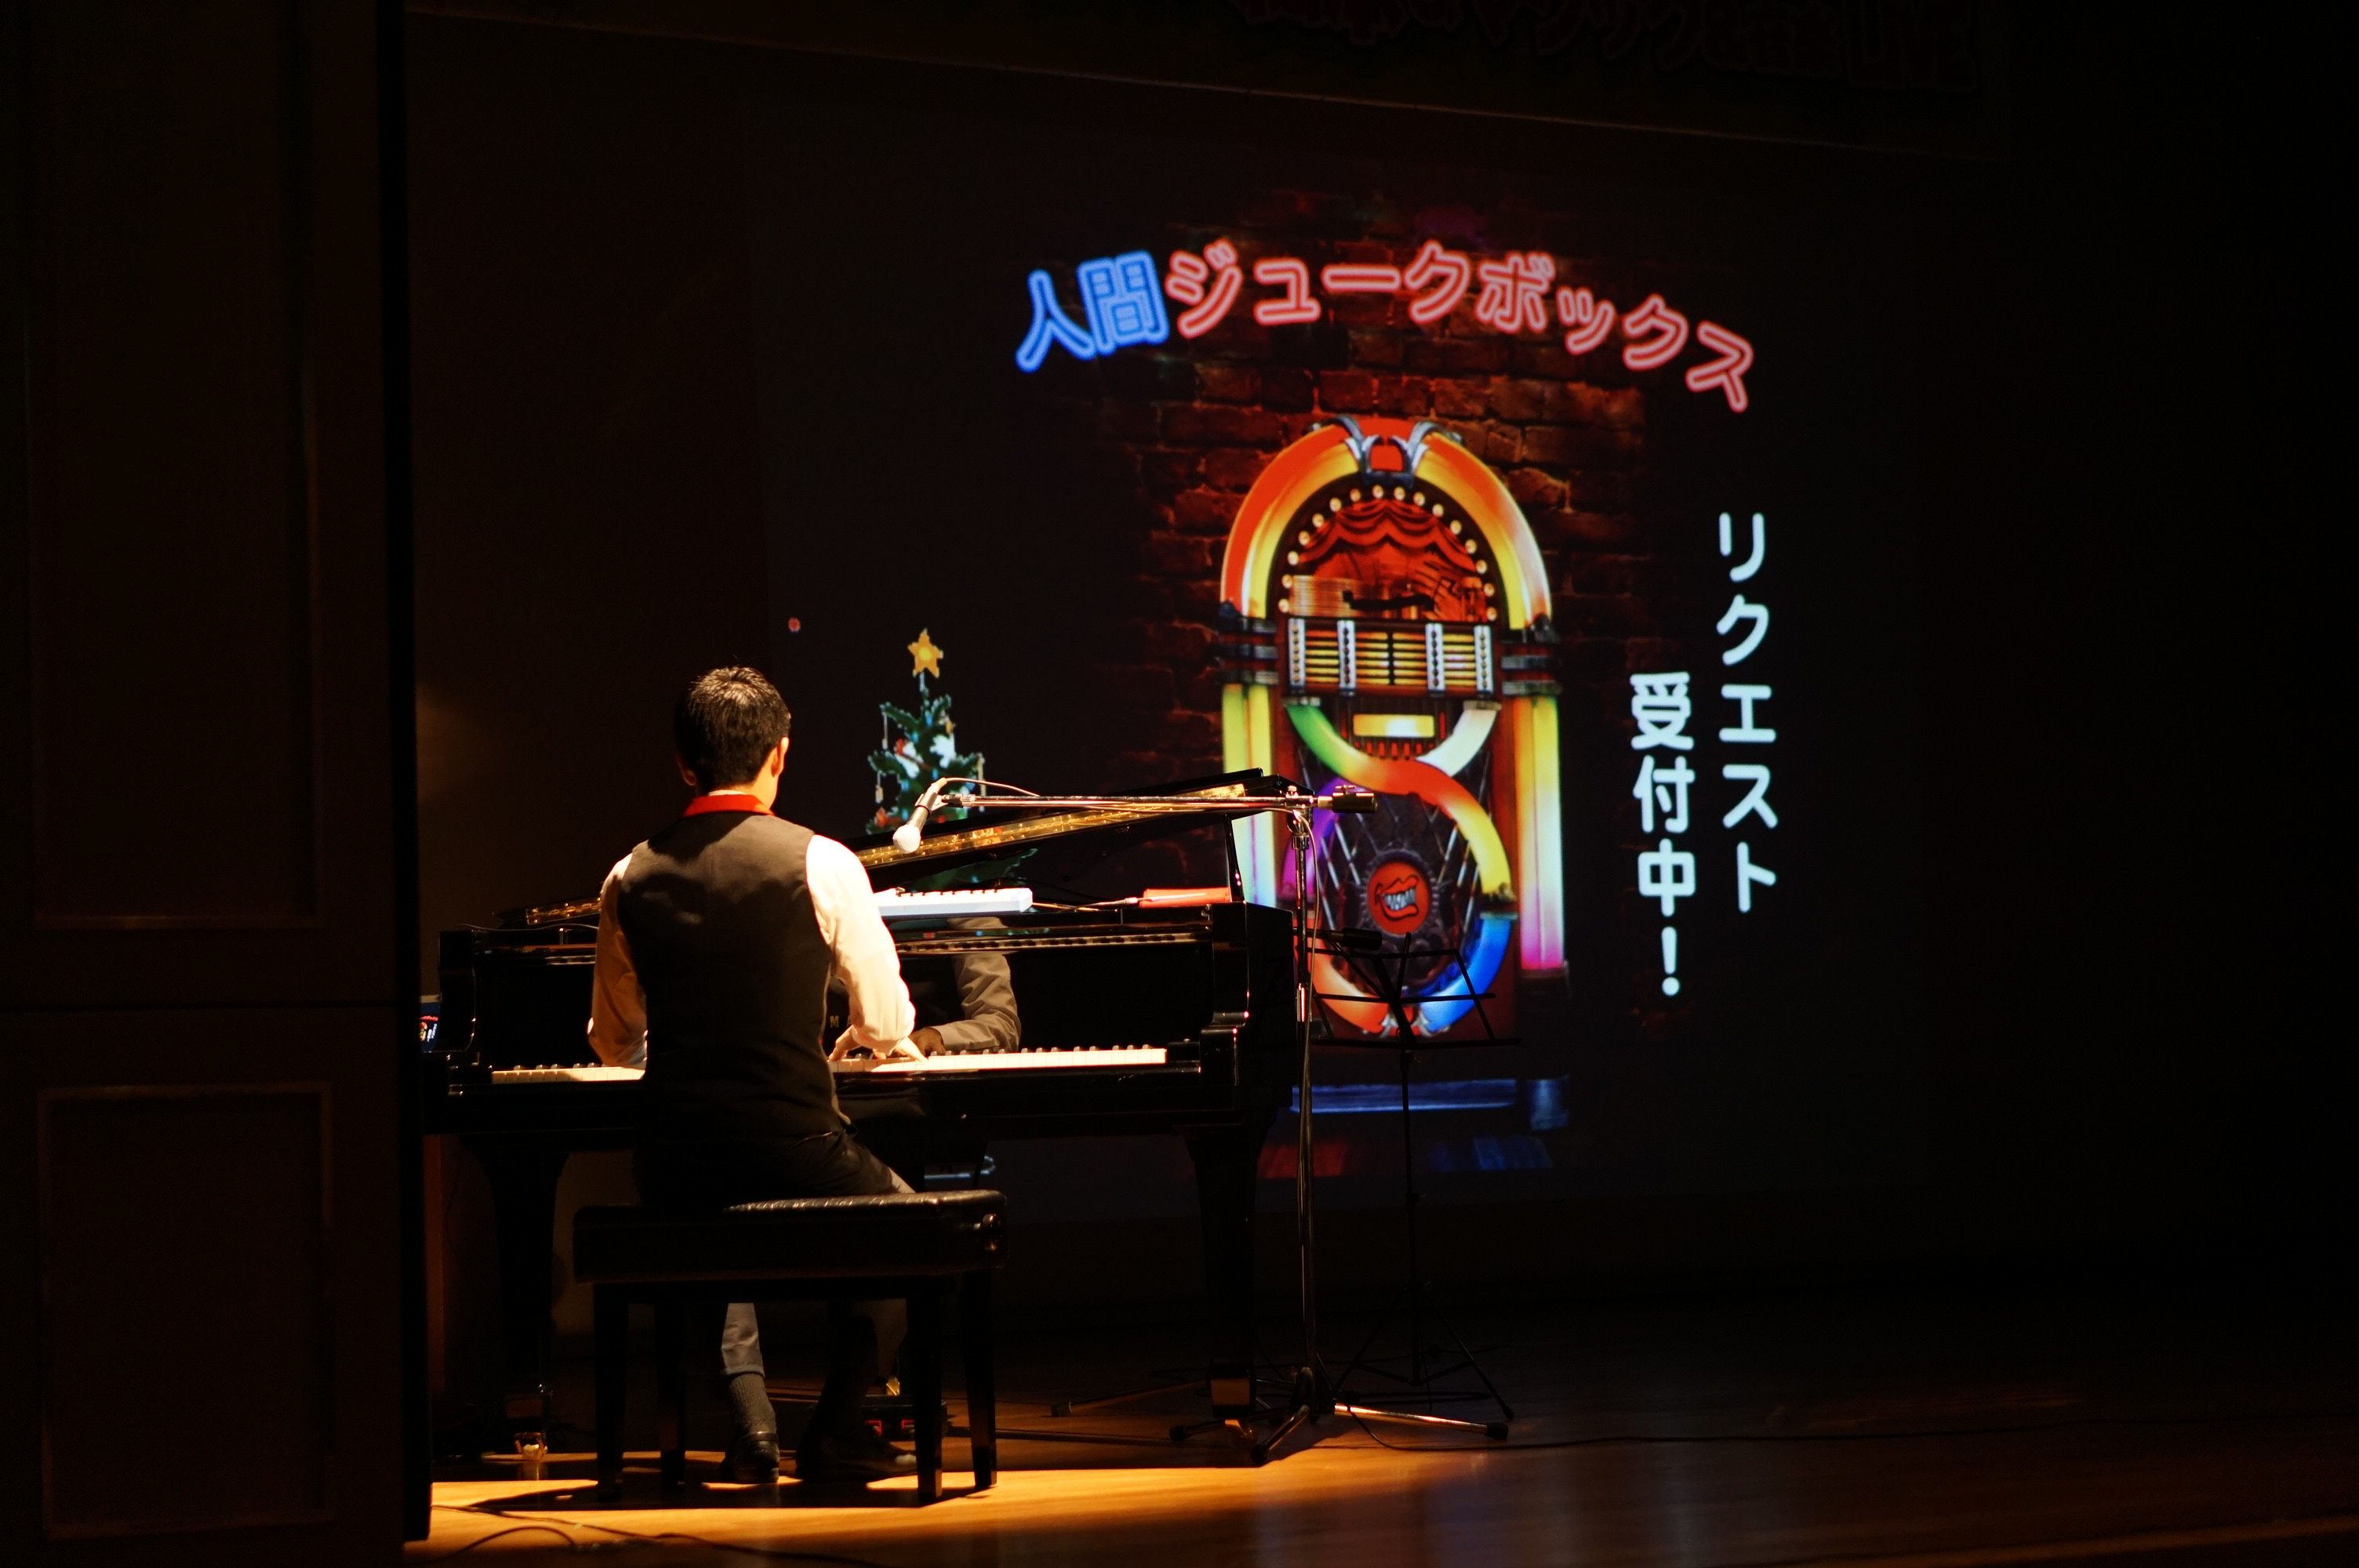 「人間ジュークボックス」とかかれた舞台装置の前でピアノを弾く大友さんの写真